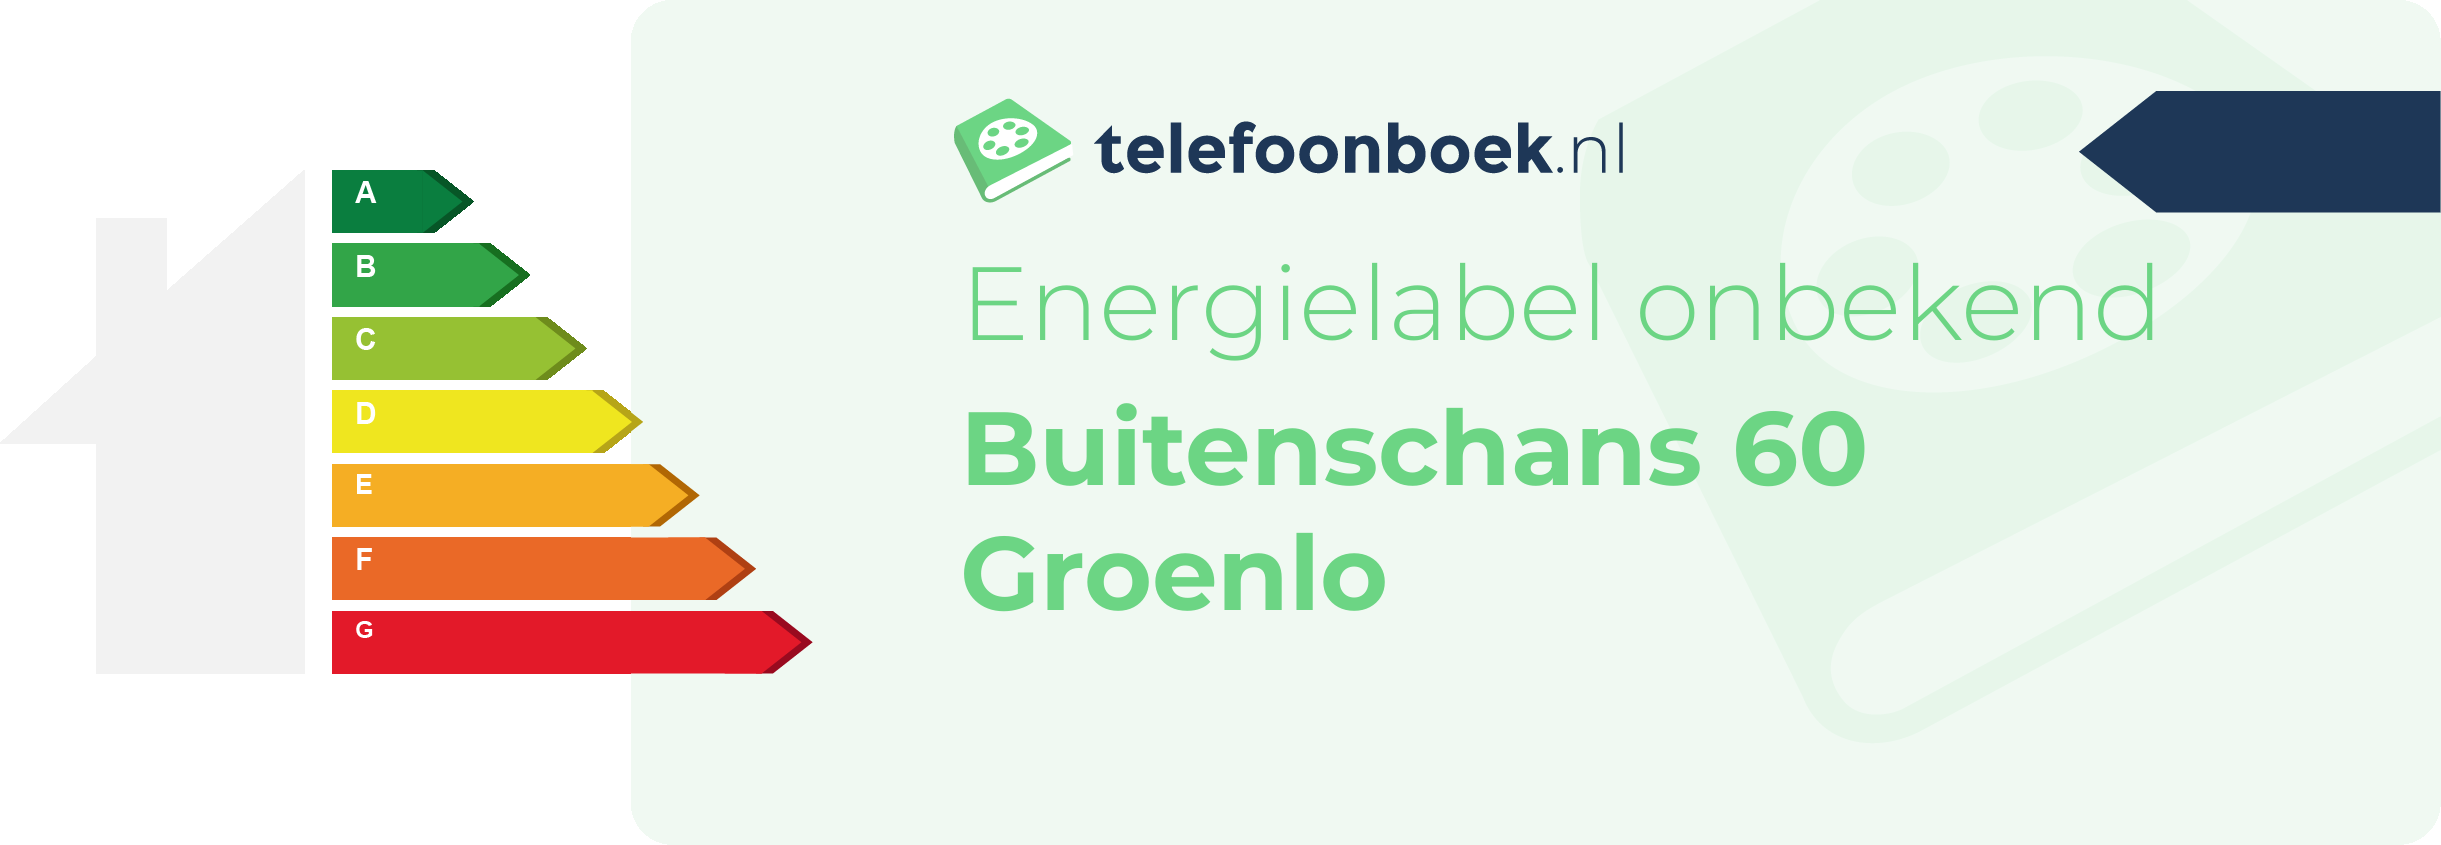 Energielabel Buitenschans 60 Groenlo